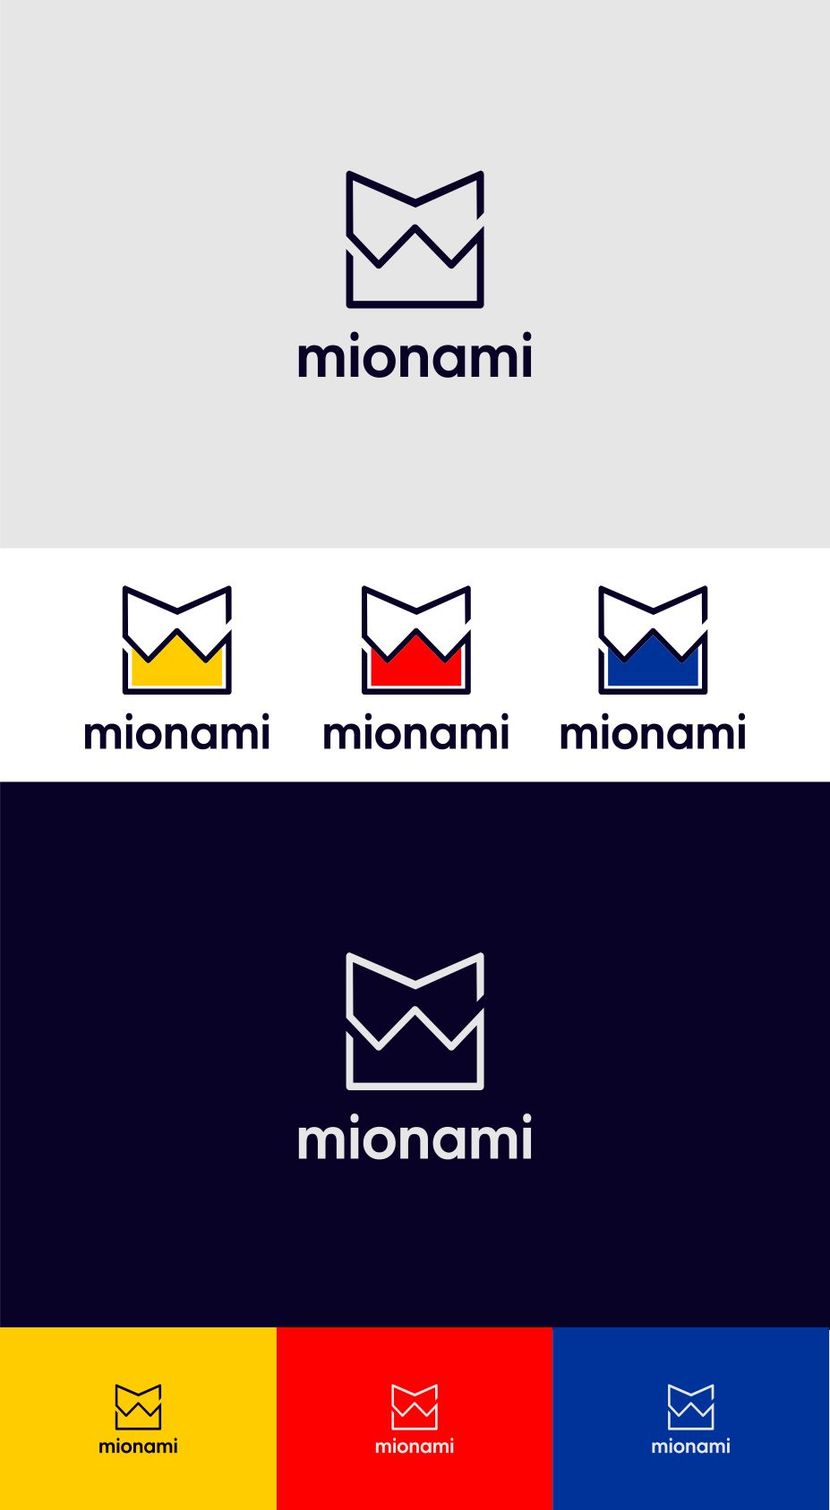 Современный, яркий, запоминающийся логотип в виде стилизованной буквы "М" под воротничок рубашки. Знак логотипа отлично подходит для иконки приложения. Может добавлен любым фирменным цветом. Буду рада комментариям и пожеланиям к доработке. - Необходимо разработать логотип для молодого бренда одежды MIONAMI